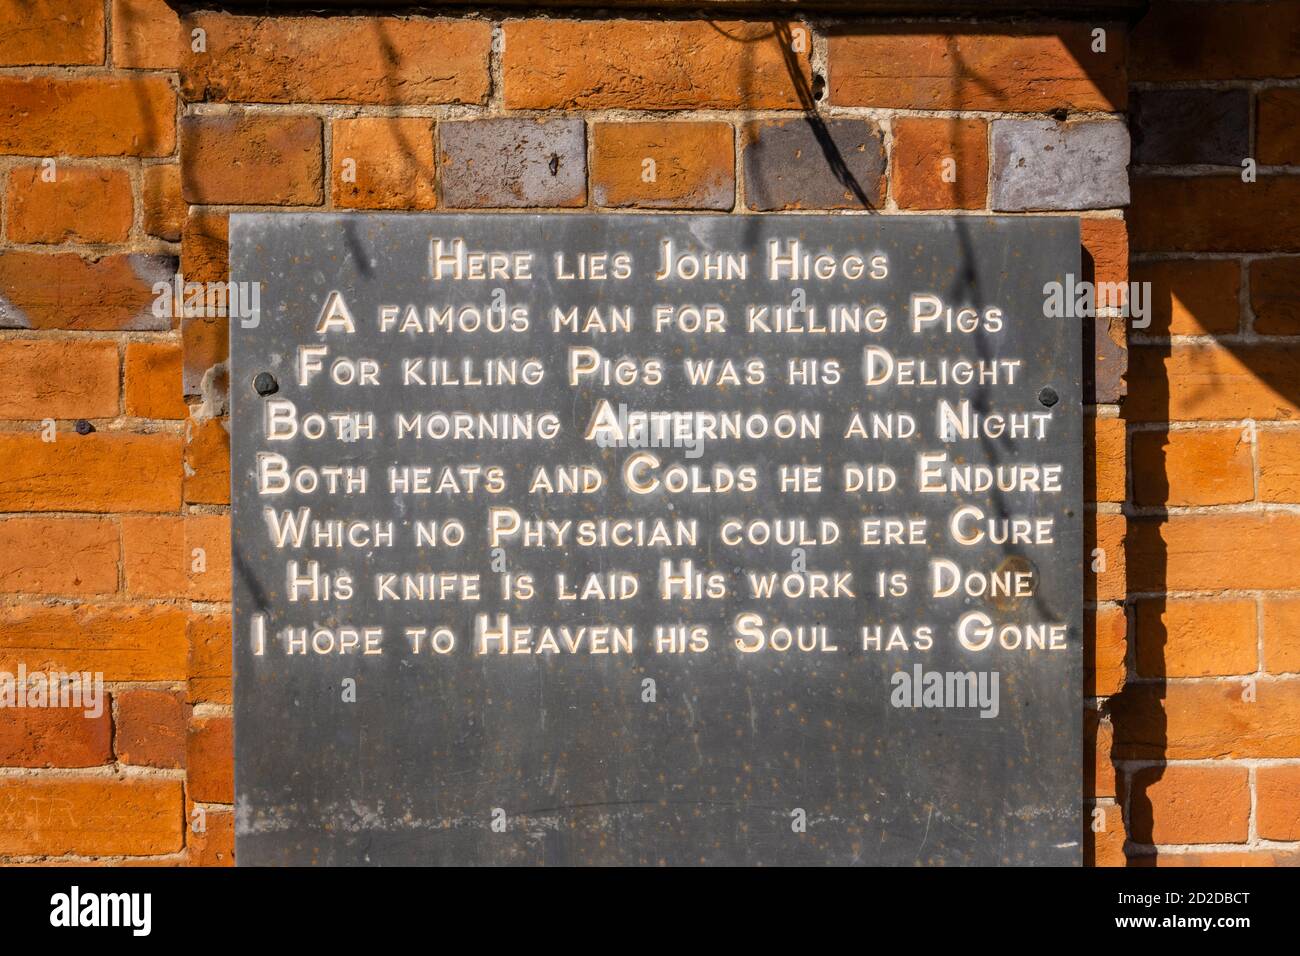 Une inscription inhabituelle en tablette d'ardoise épitaphe vintage est affichée sur le mur du bureau de poste de Great Bedwyn, un village de Wiltshire, dans le sud de l'Angleterre Banque D'Images